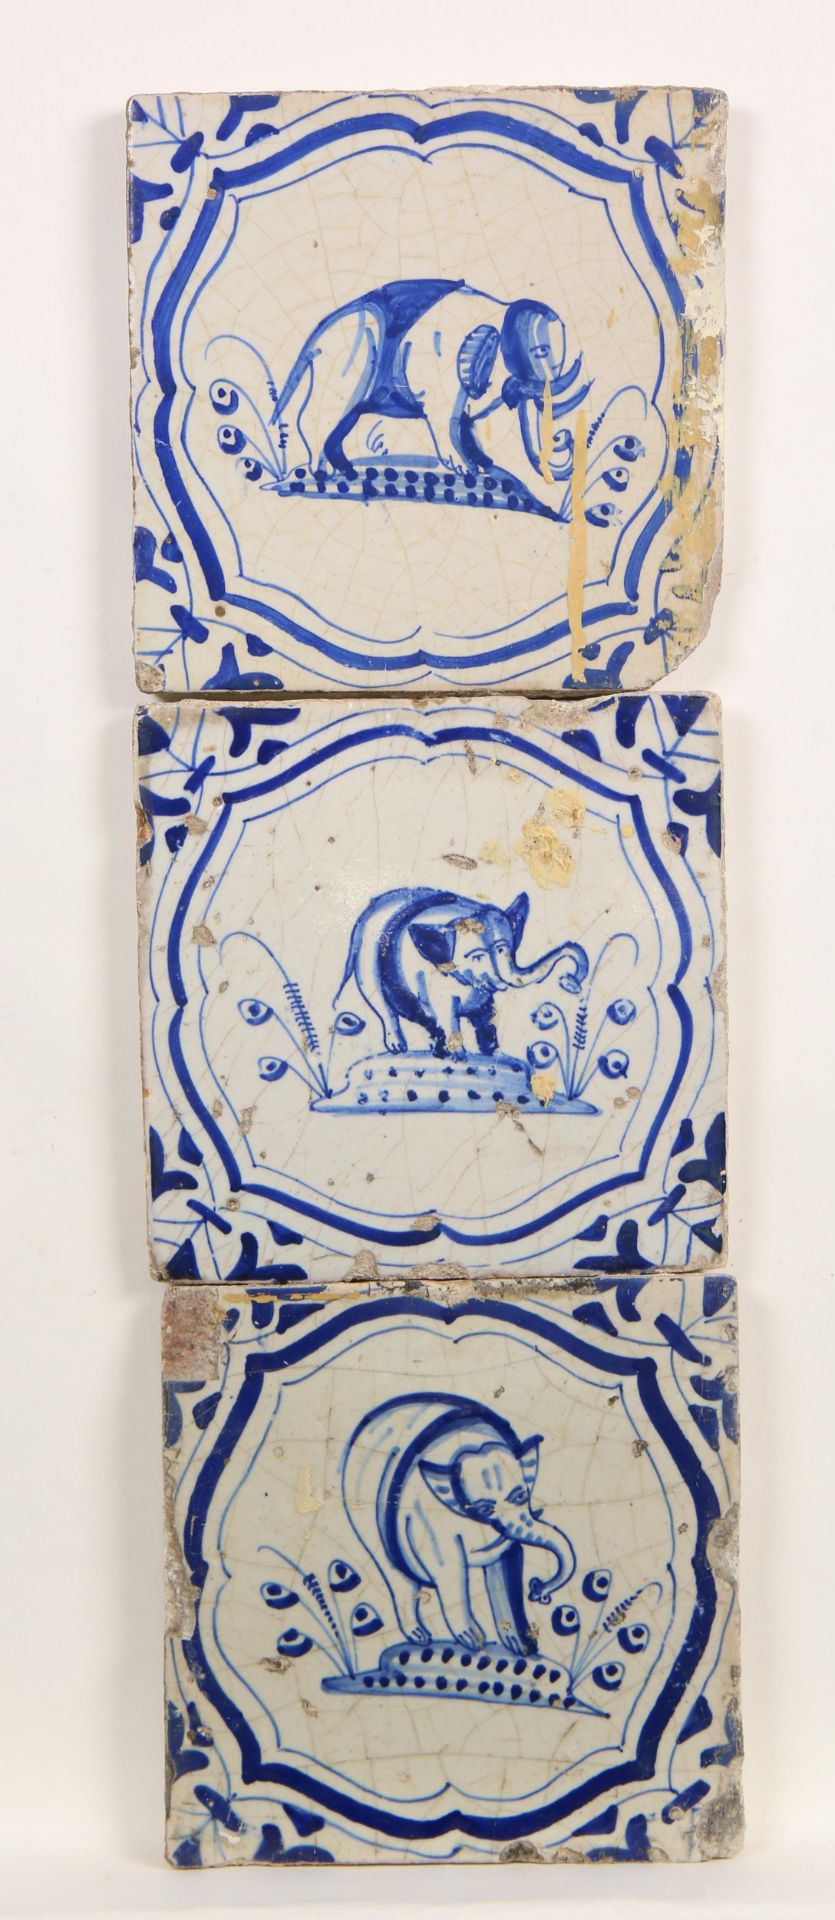 Drie blauw aardewerk dierendecor tegels, ca. 1625-1650;